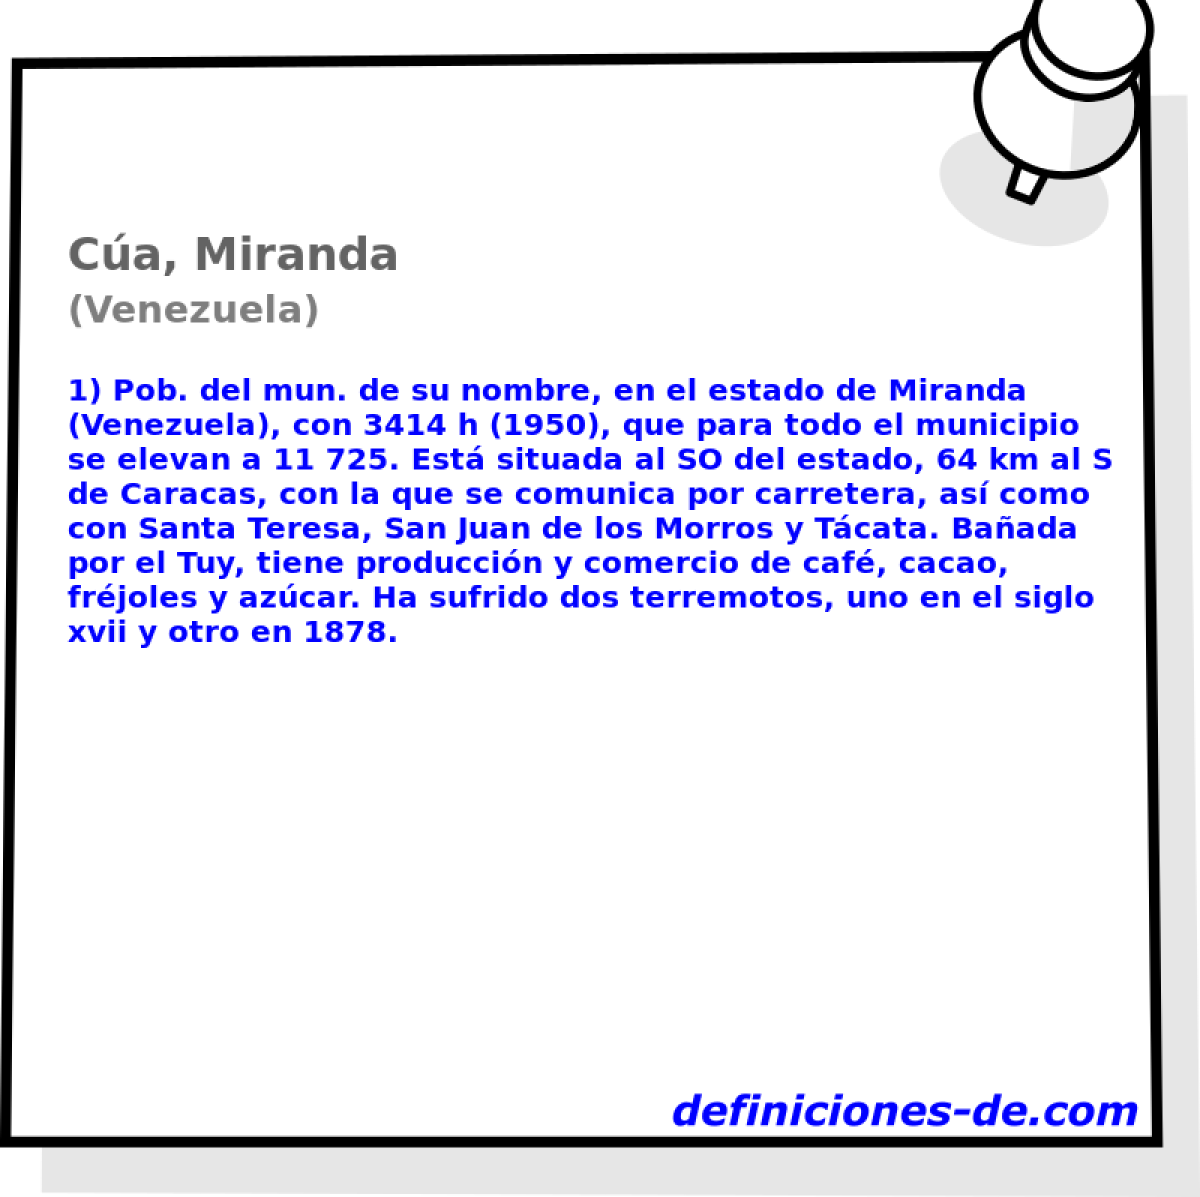 Ca, Miranda (Venezuela)